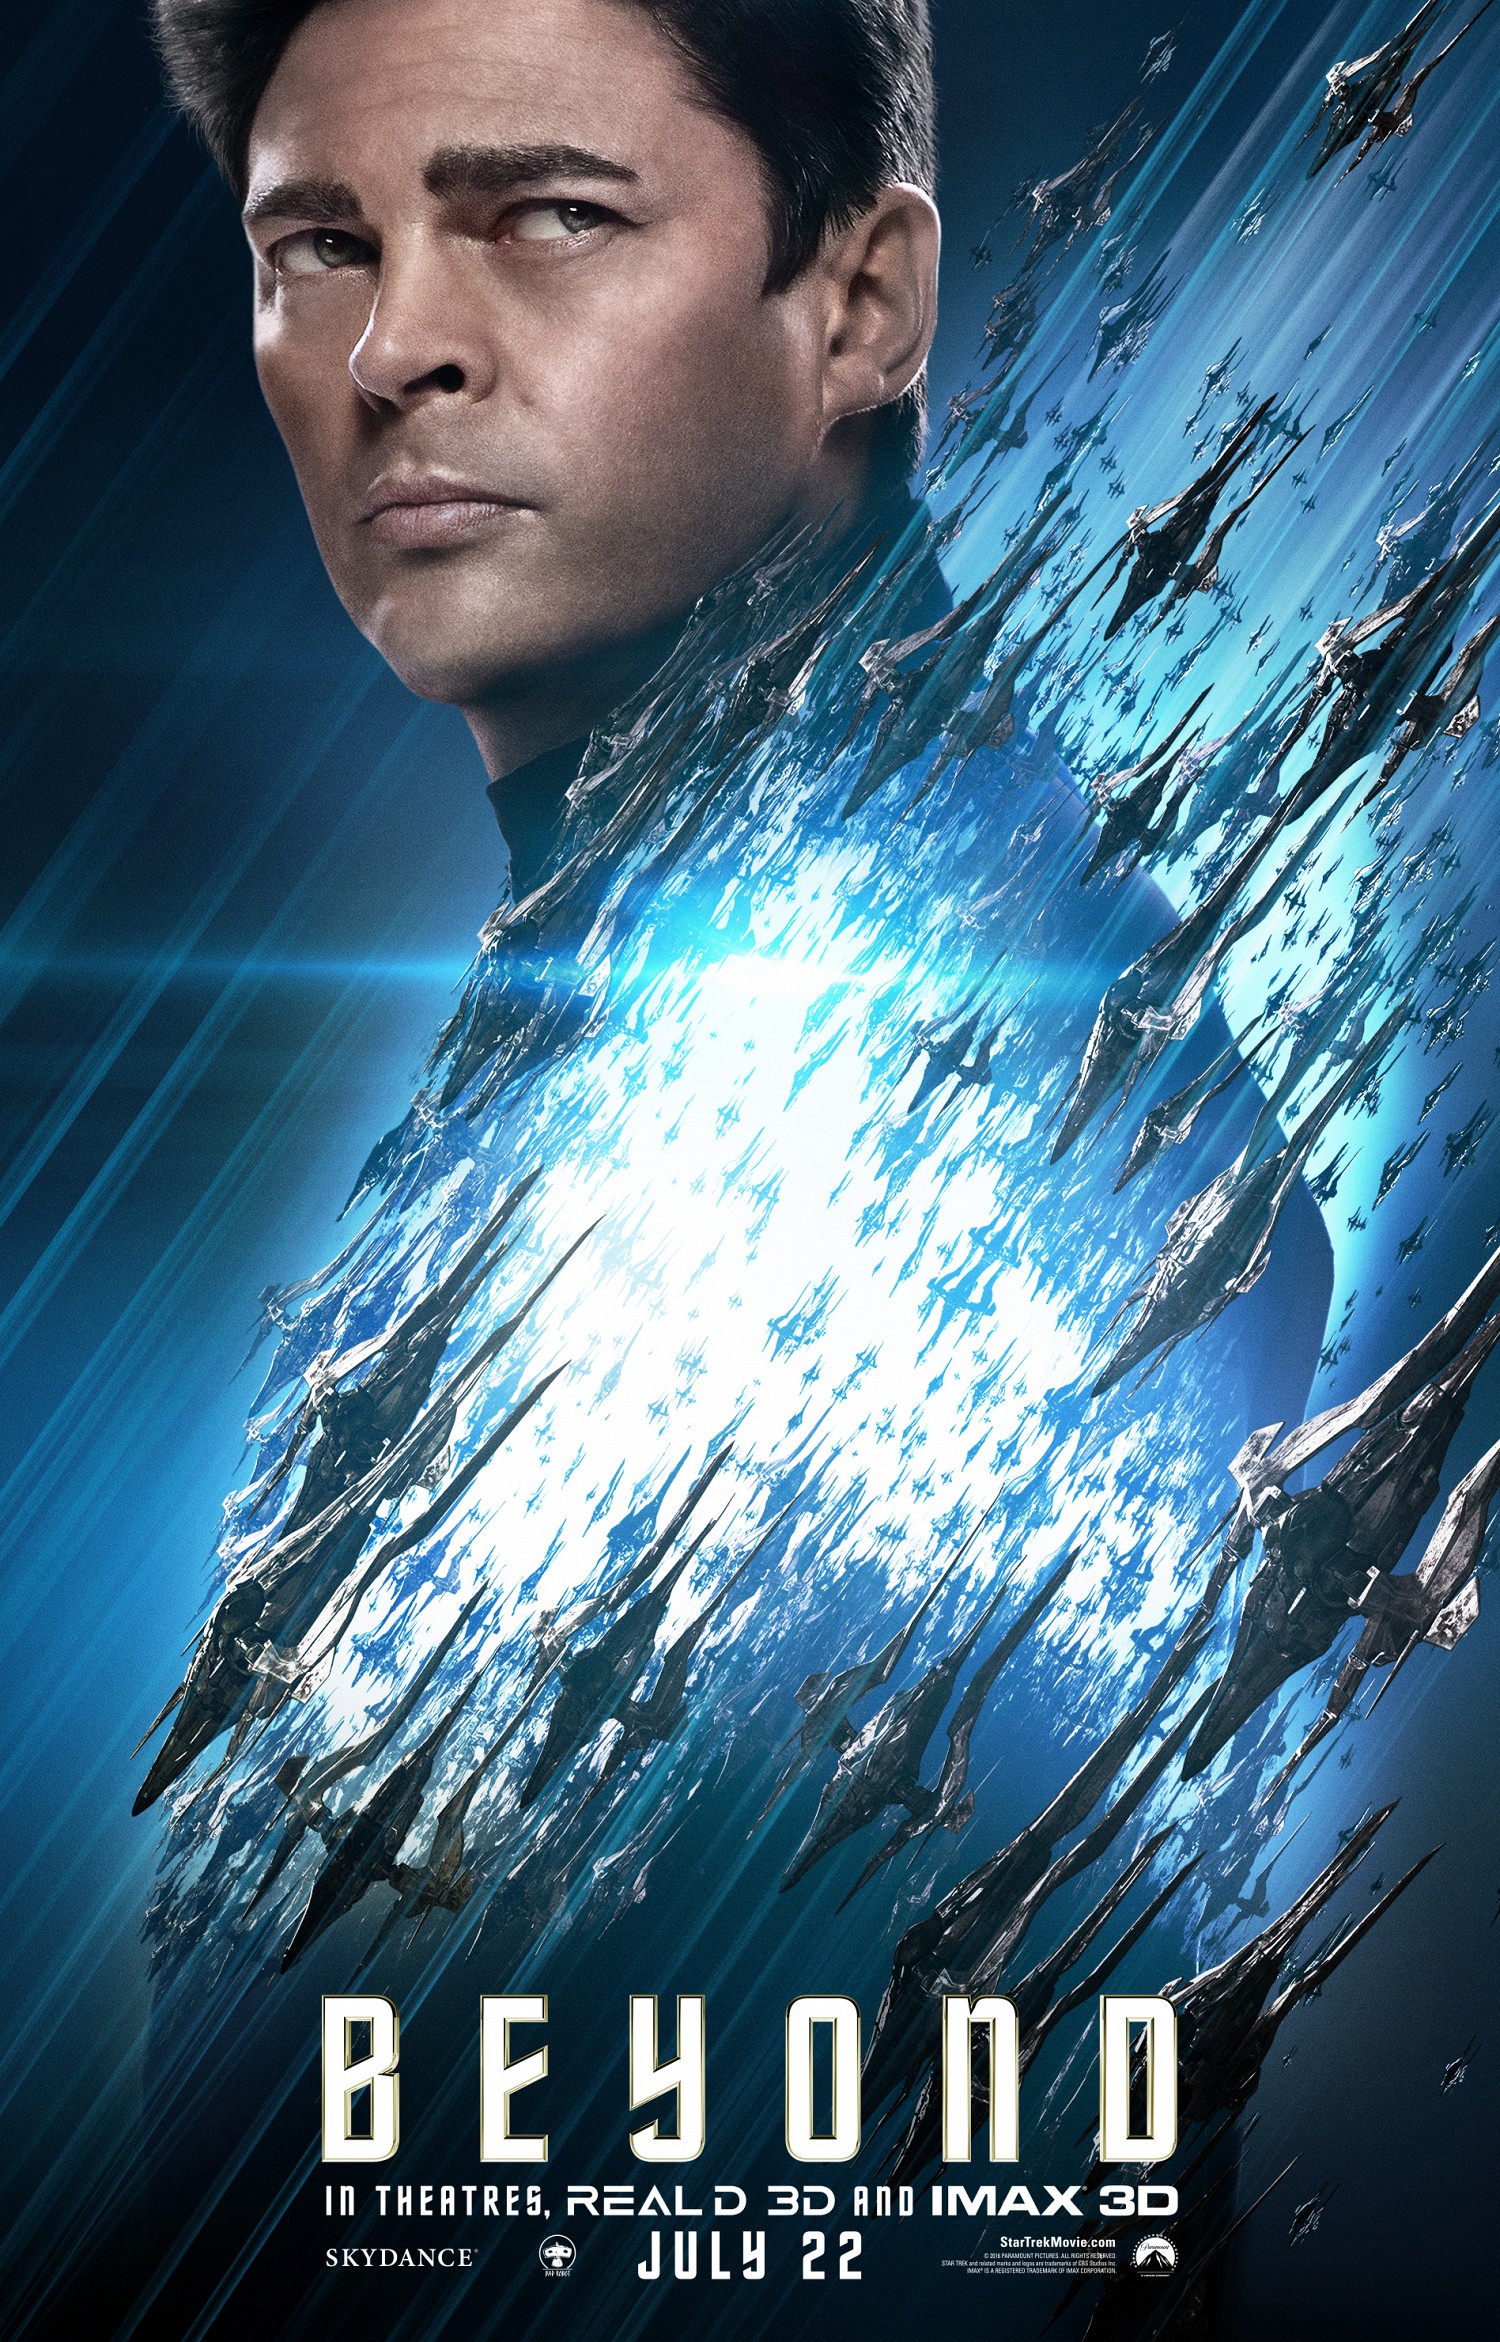 Karl Urban as 'Bones' in 'Star Trek Beyond'